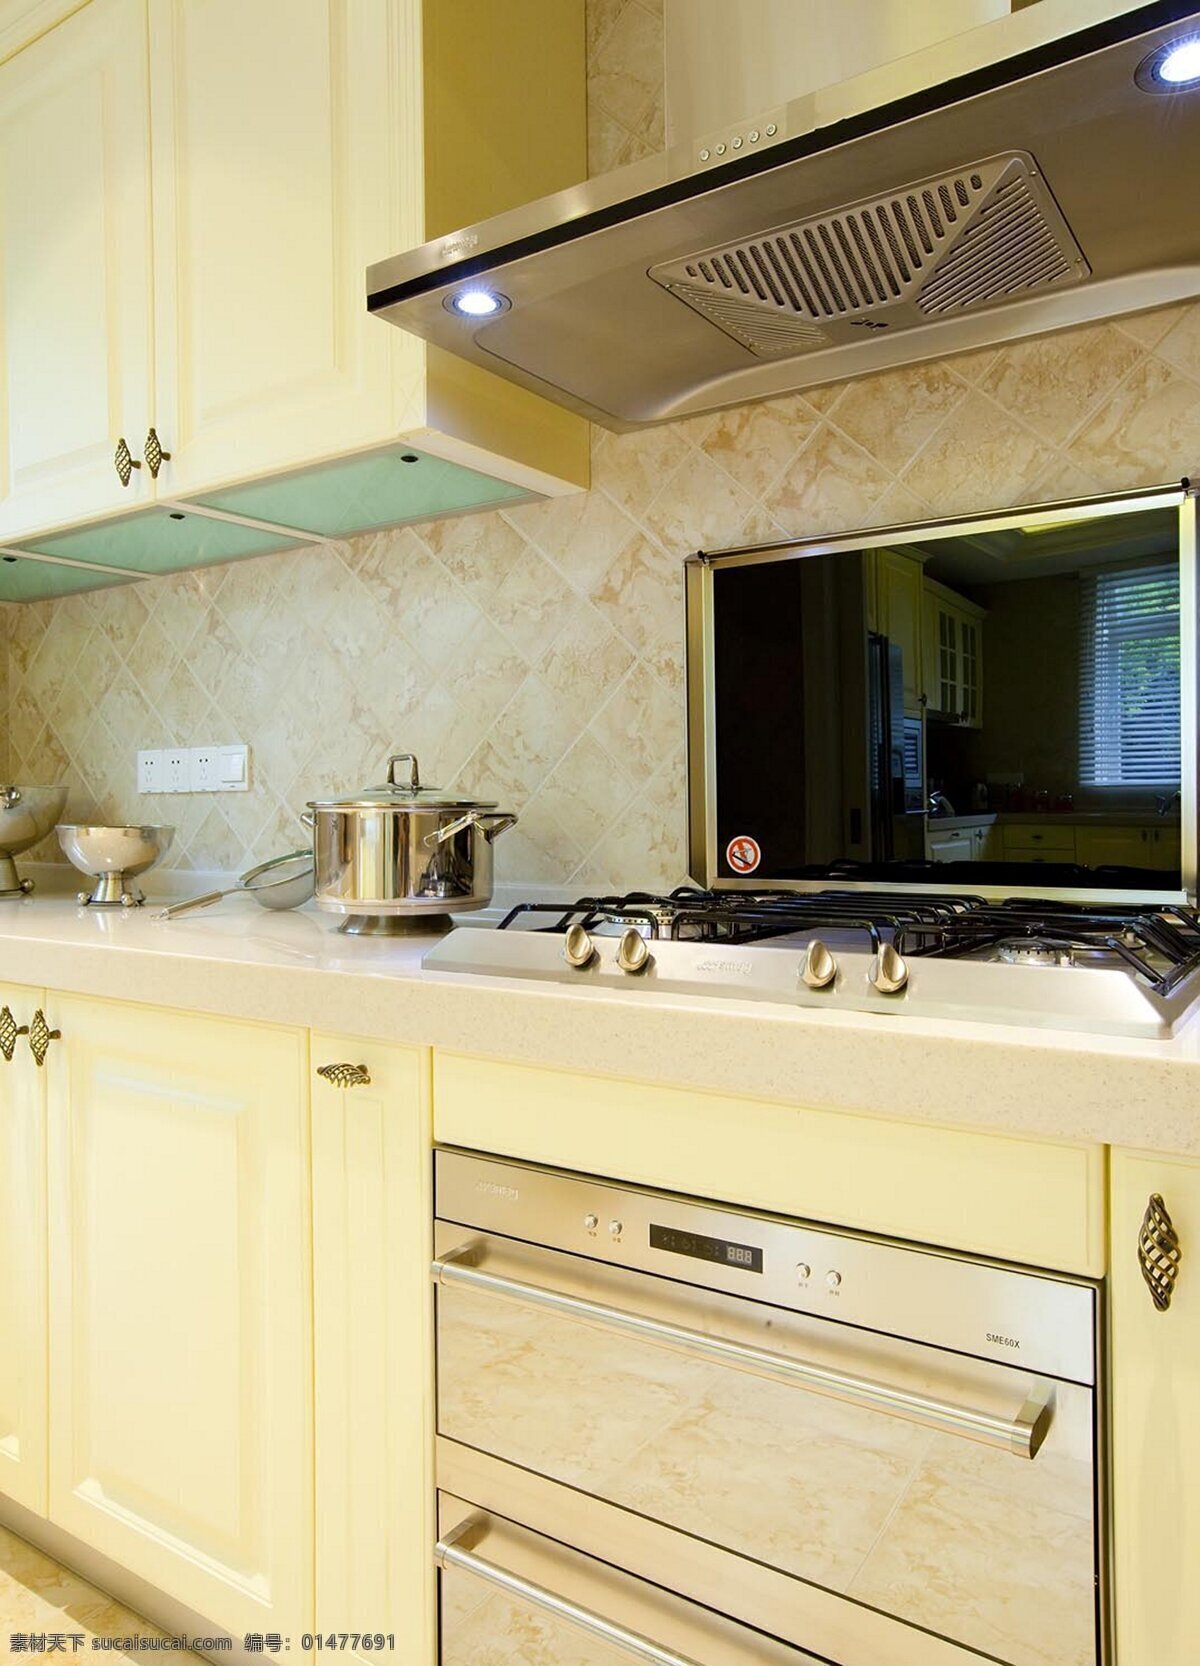 欧式 厨房 橱柜 设计图 家居 家居生活 室内设计 装修 室内 家具 装修设计 环境设计 效果图